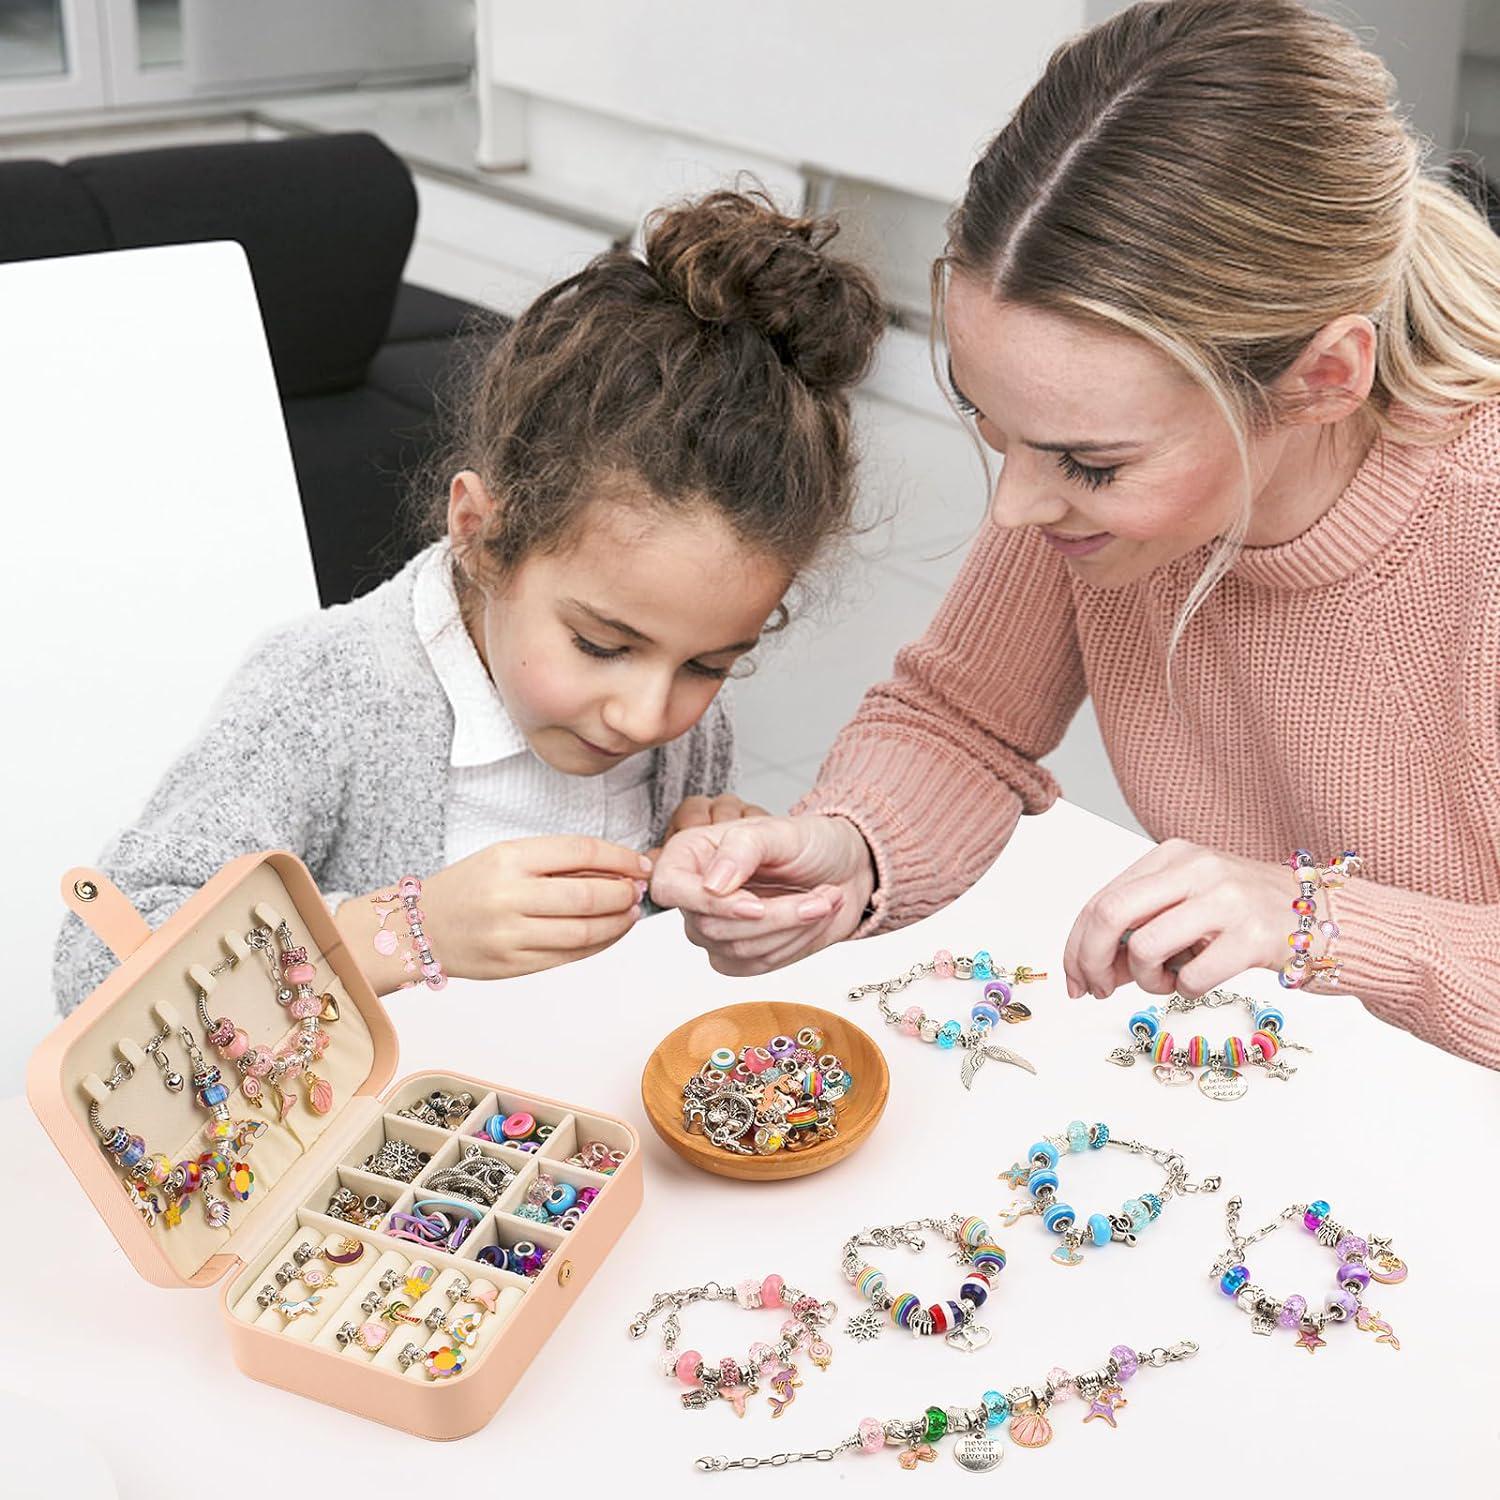 Klmars Bracelet Making Craft Kit for Girls,Jewelry Making Supplies